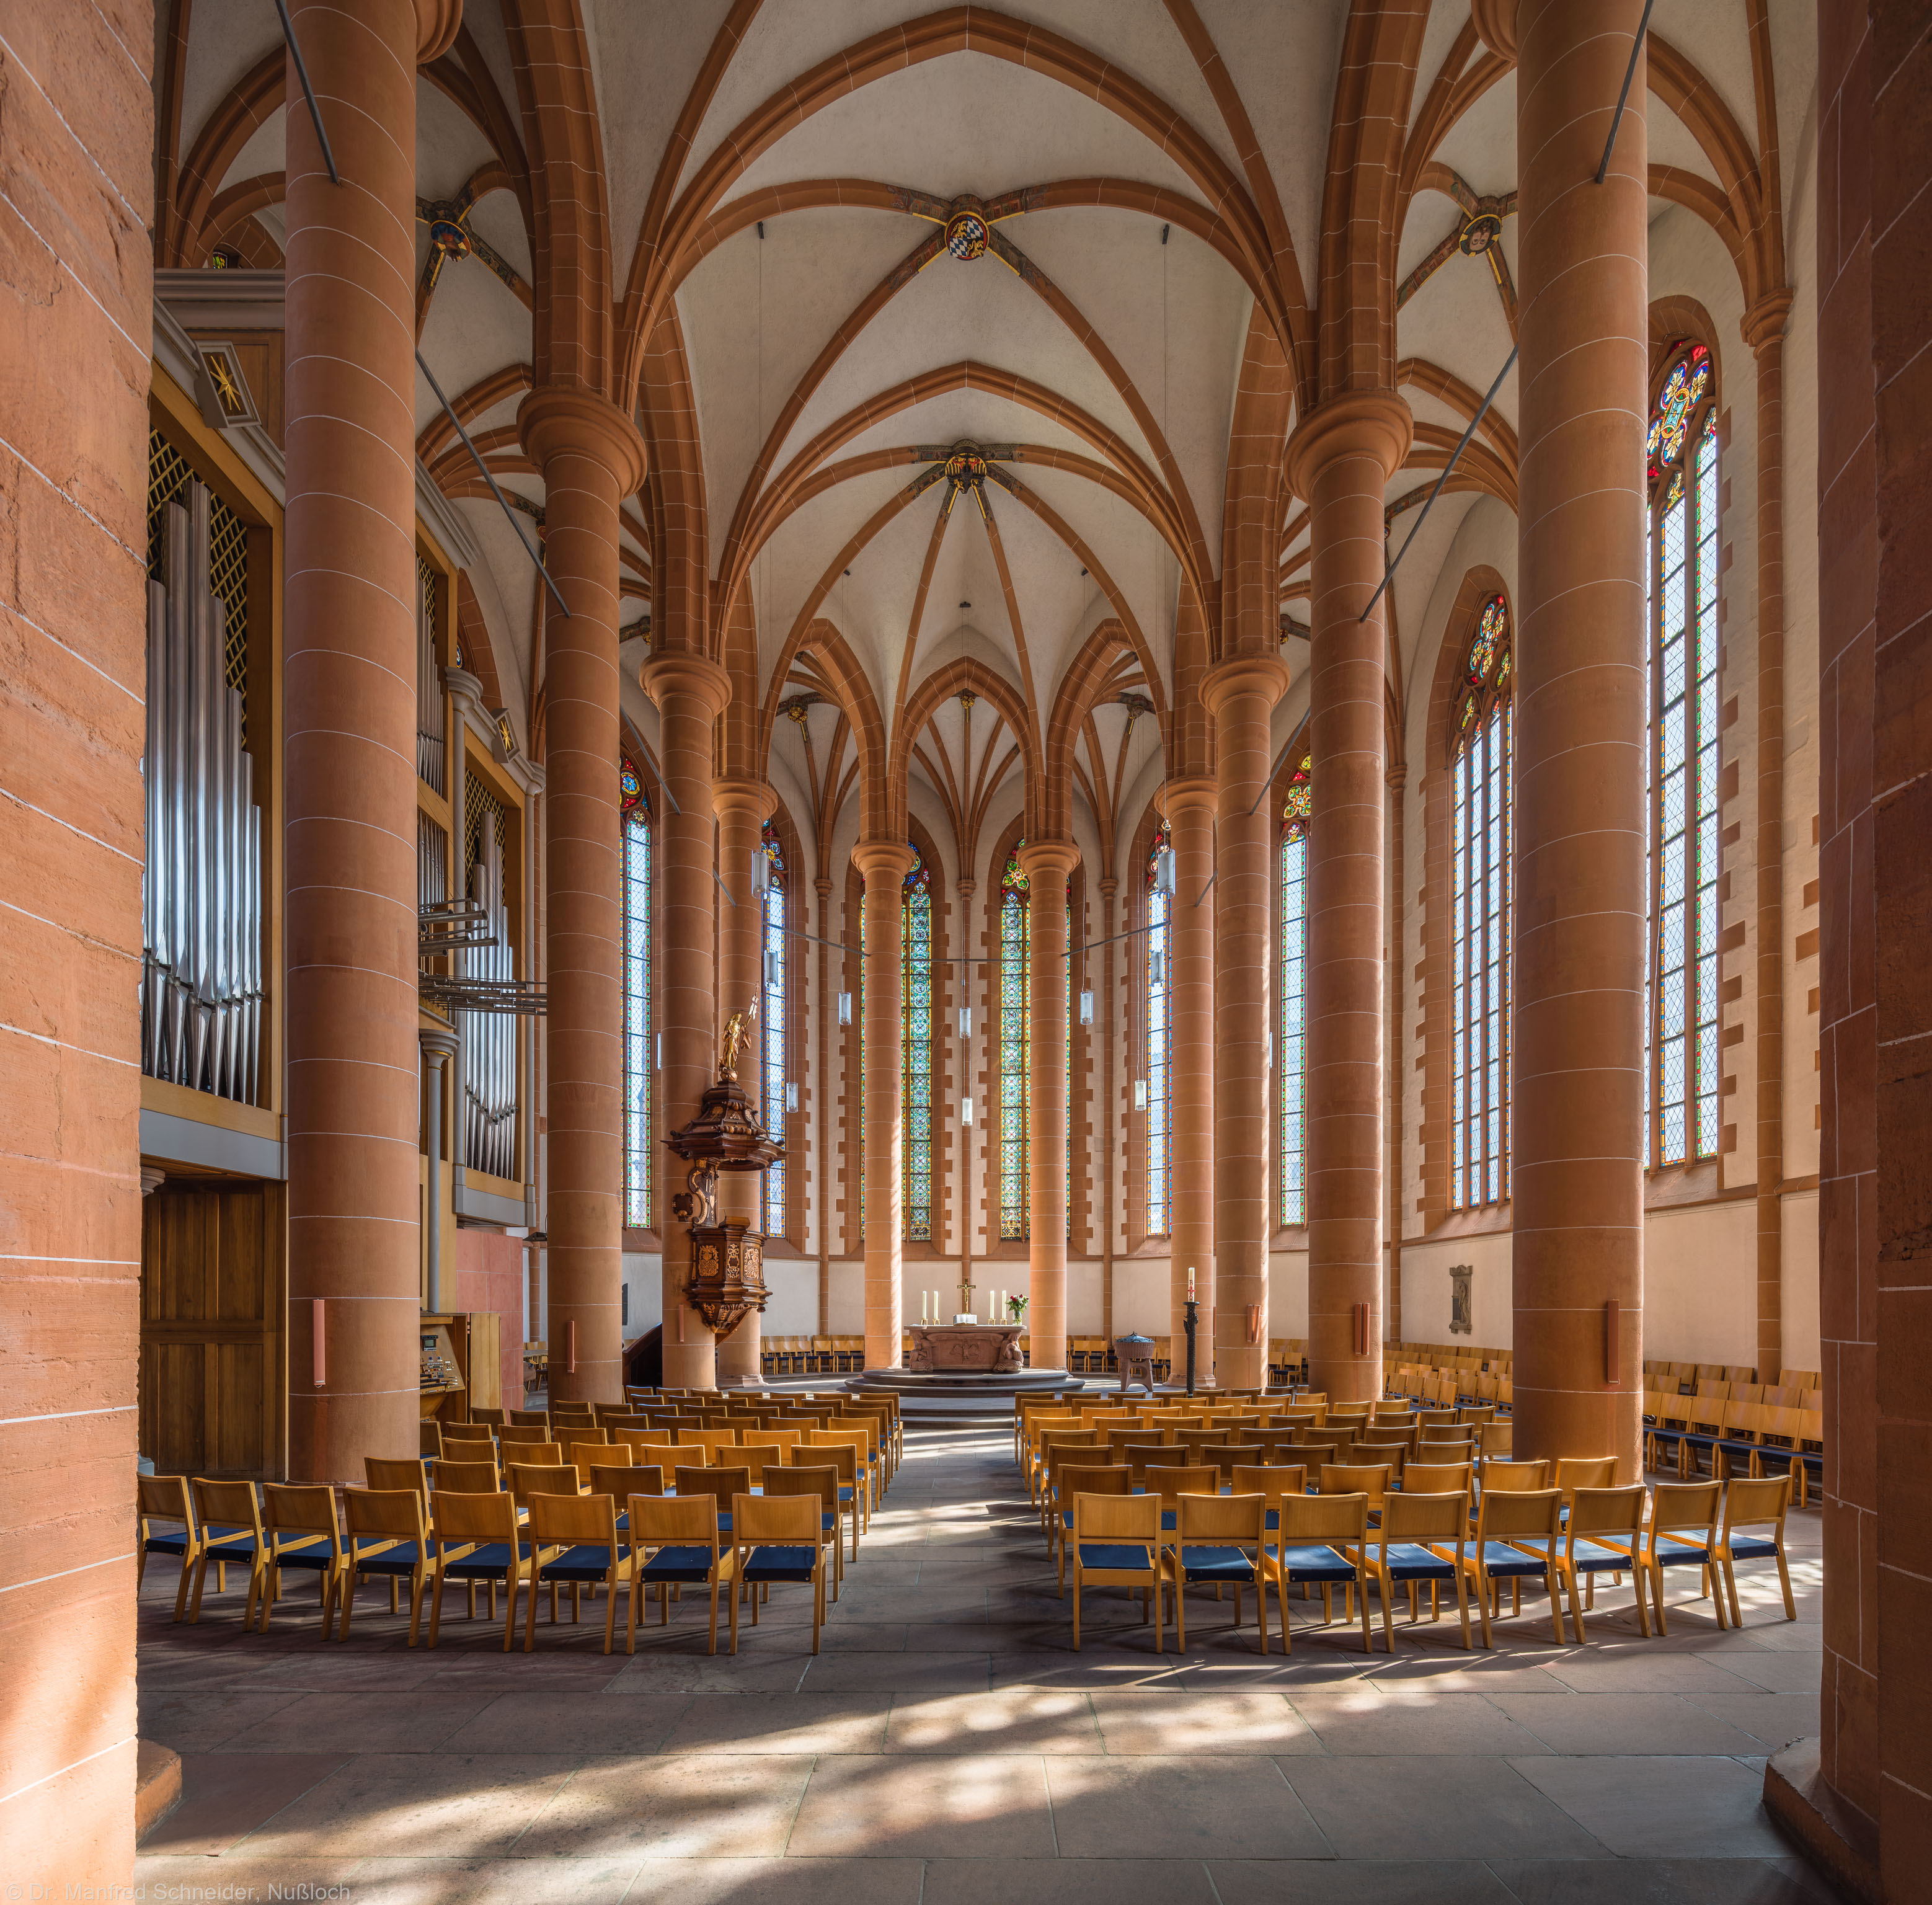 Heidelberg - Heiliggeistkirche - Chor - Blick in den Chor mit Säulen, Gewölbe, Orgel, Kanzel und Altar (aufgenommen im September 2015, um die Mittagszeit)